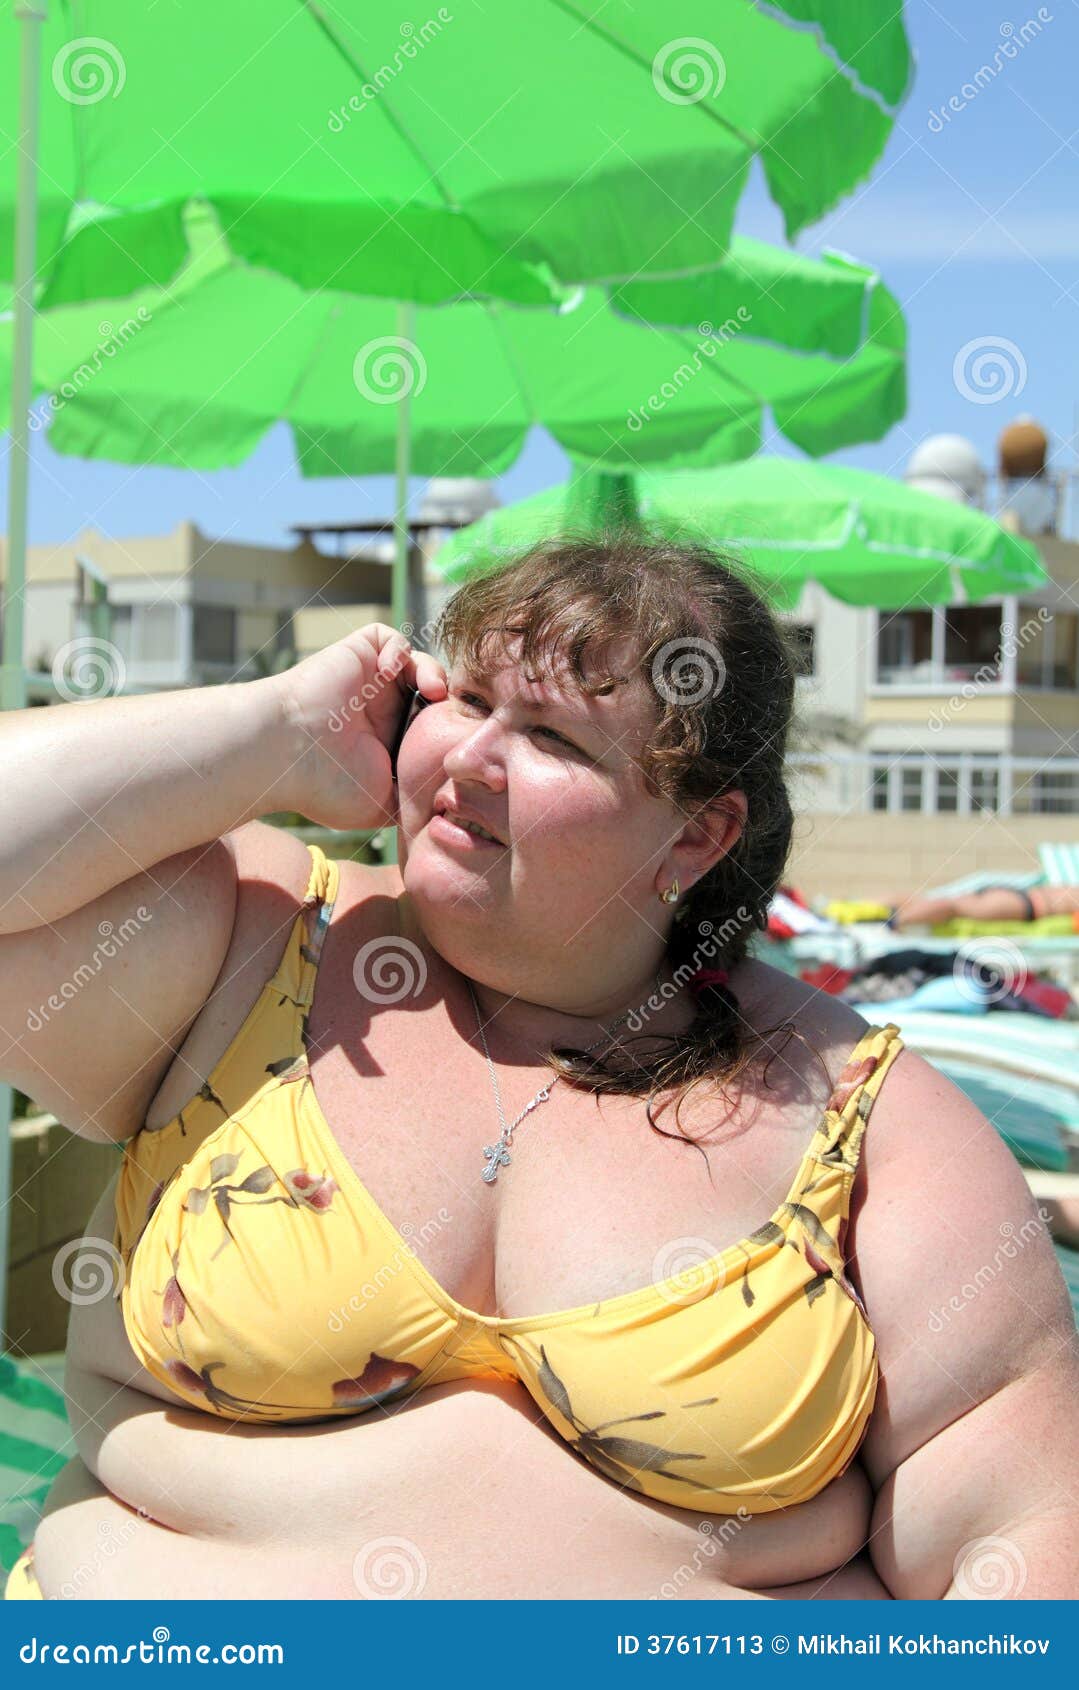 Грязные разговоры жирные. Толстухи в купальниках. Женщина с избыточным весом на пляже.